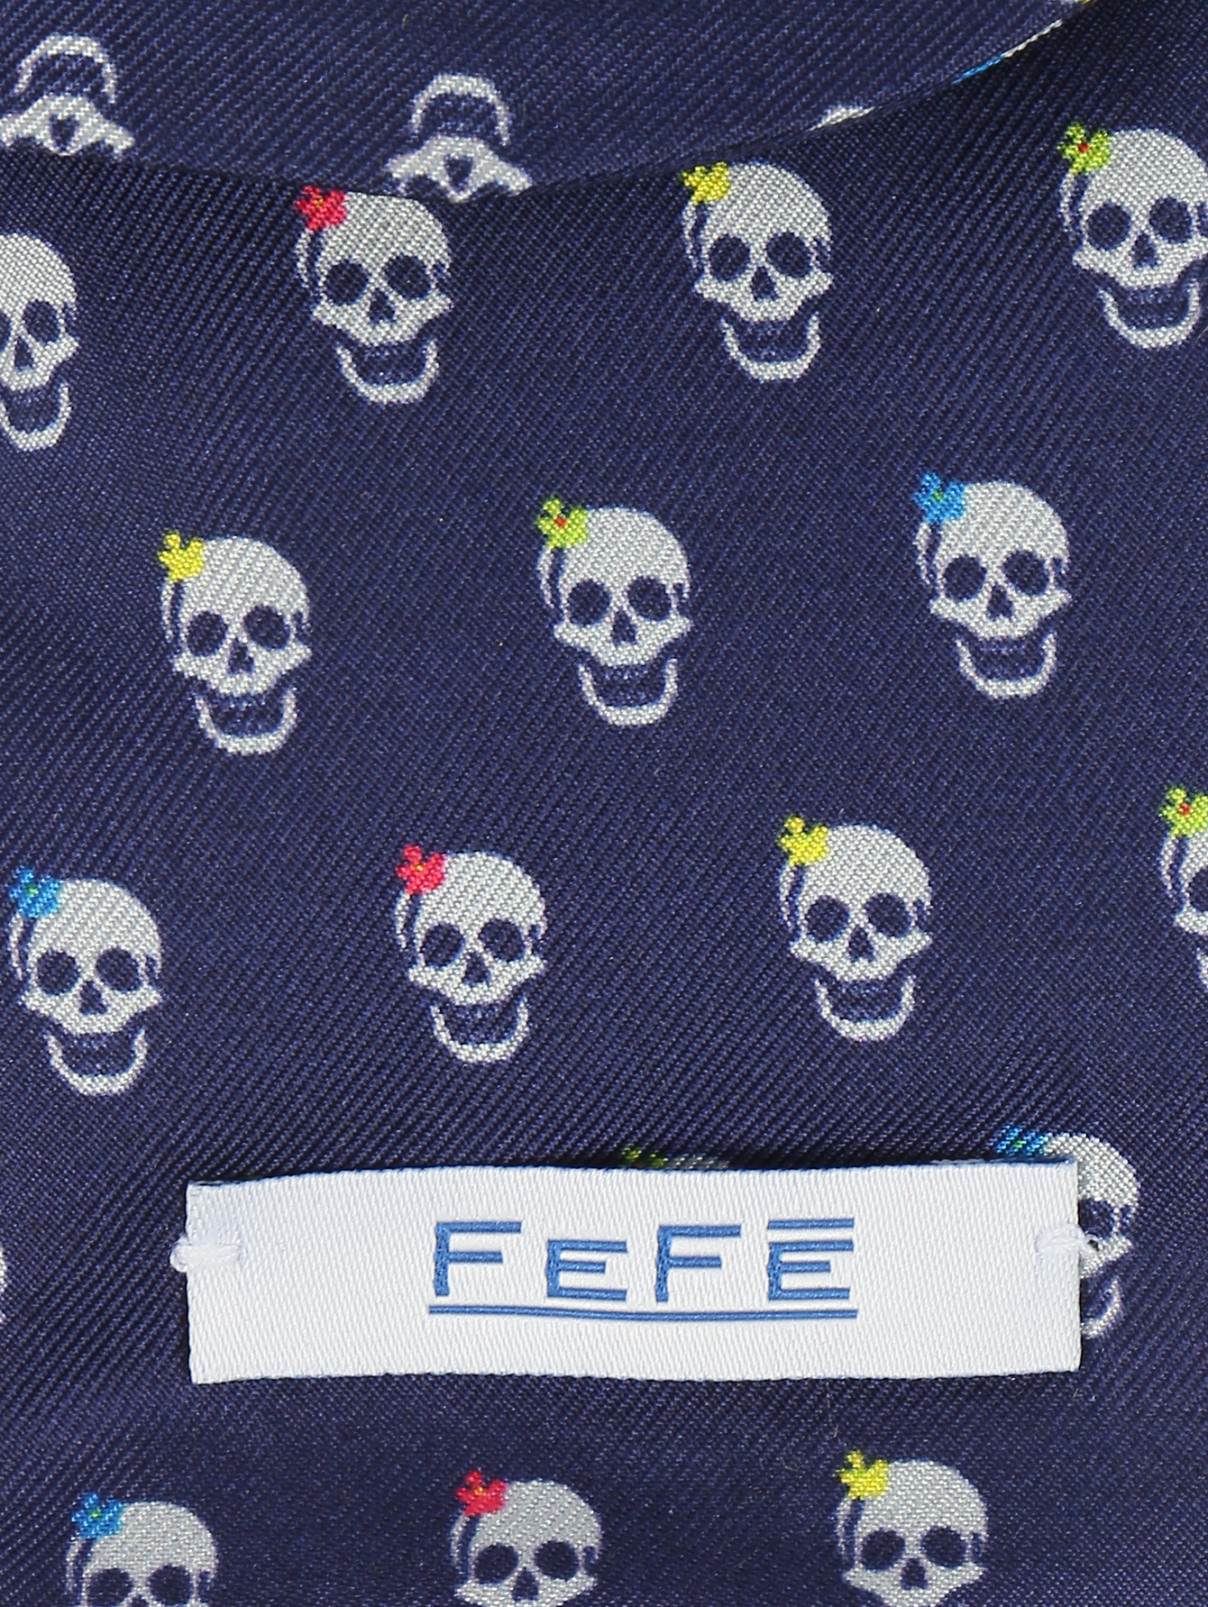 Чехол для IPhone из шелка с узором Fefe  –  Деталь  – Цвет:  Синий